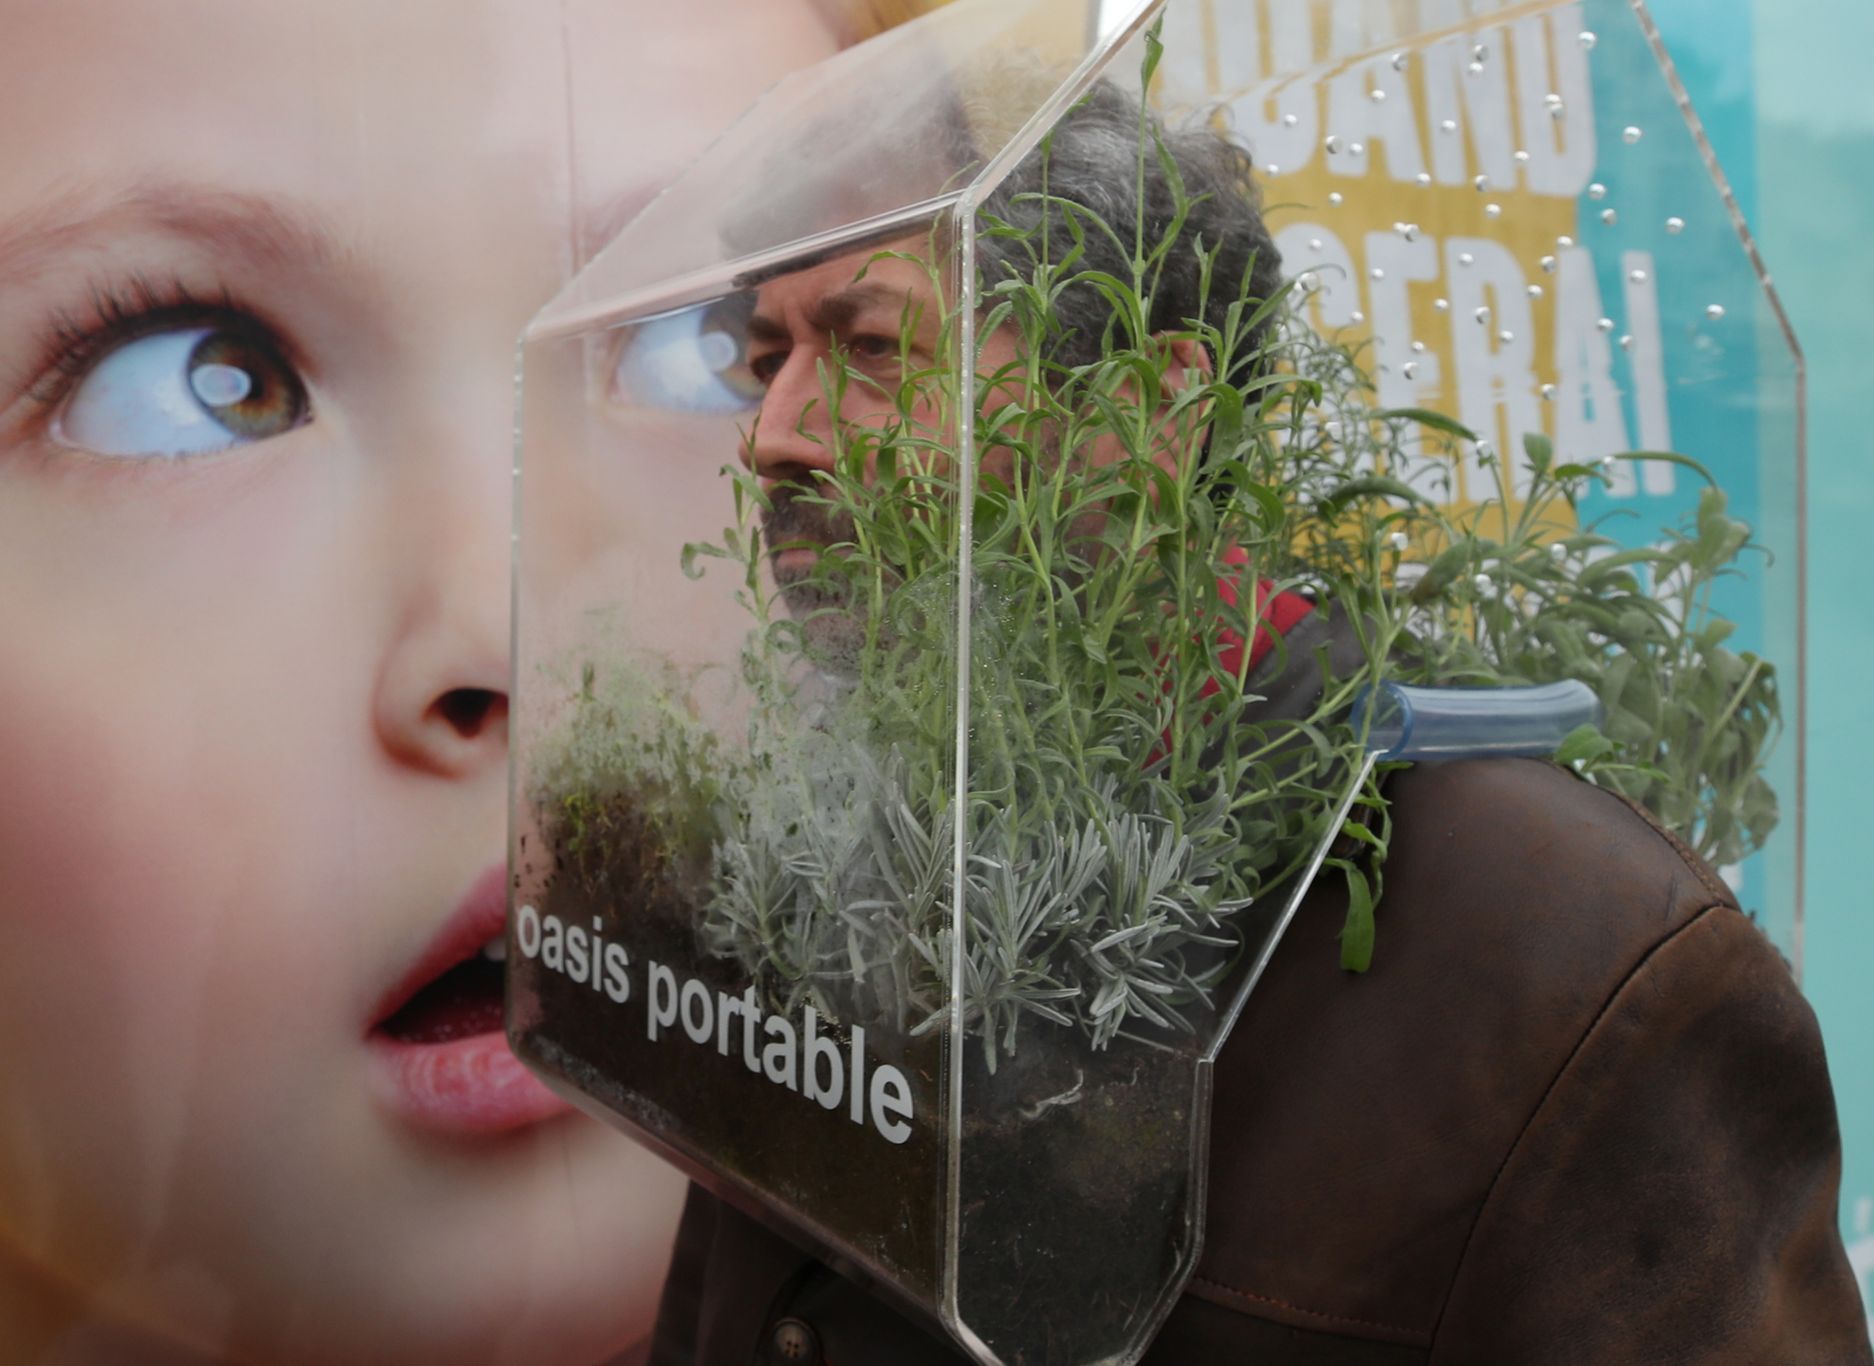 Osobní přenosná oáza pro jednoho. V soukromé bublině belgický umělec pěstuje rozmarýn i levanduli